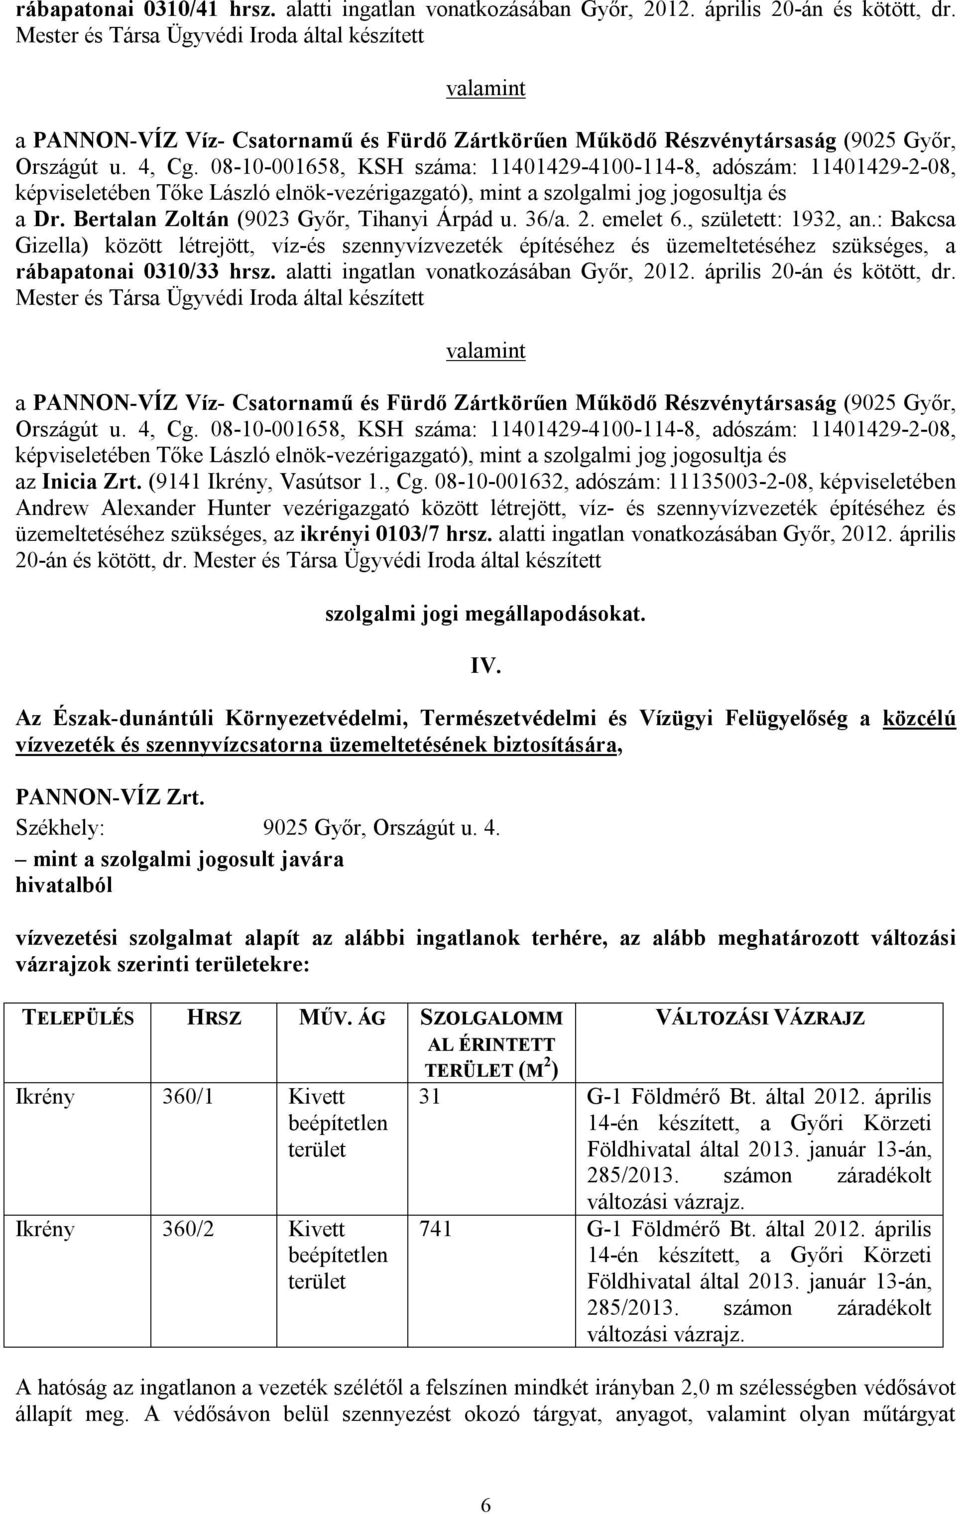 alatti ingatlan vonatkozásában Győr, 2012. április 20-án és kötött, dr. Mester és Társa Ügyvédi Iroda által készített az Inicia Zrt. (9141 Ikrény, Vasútsor 1., Cg.